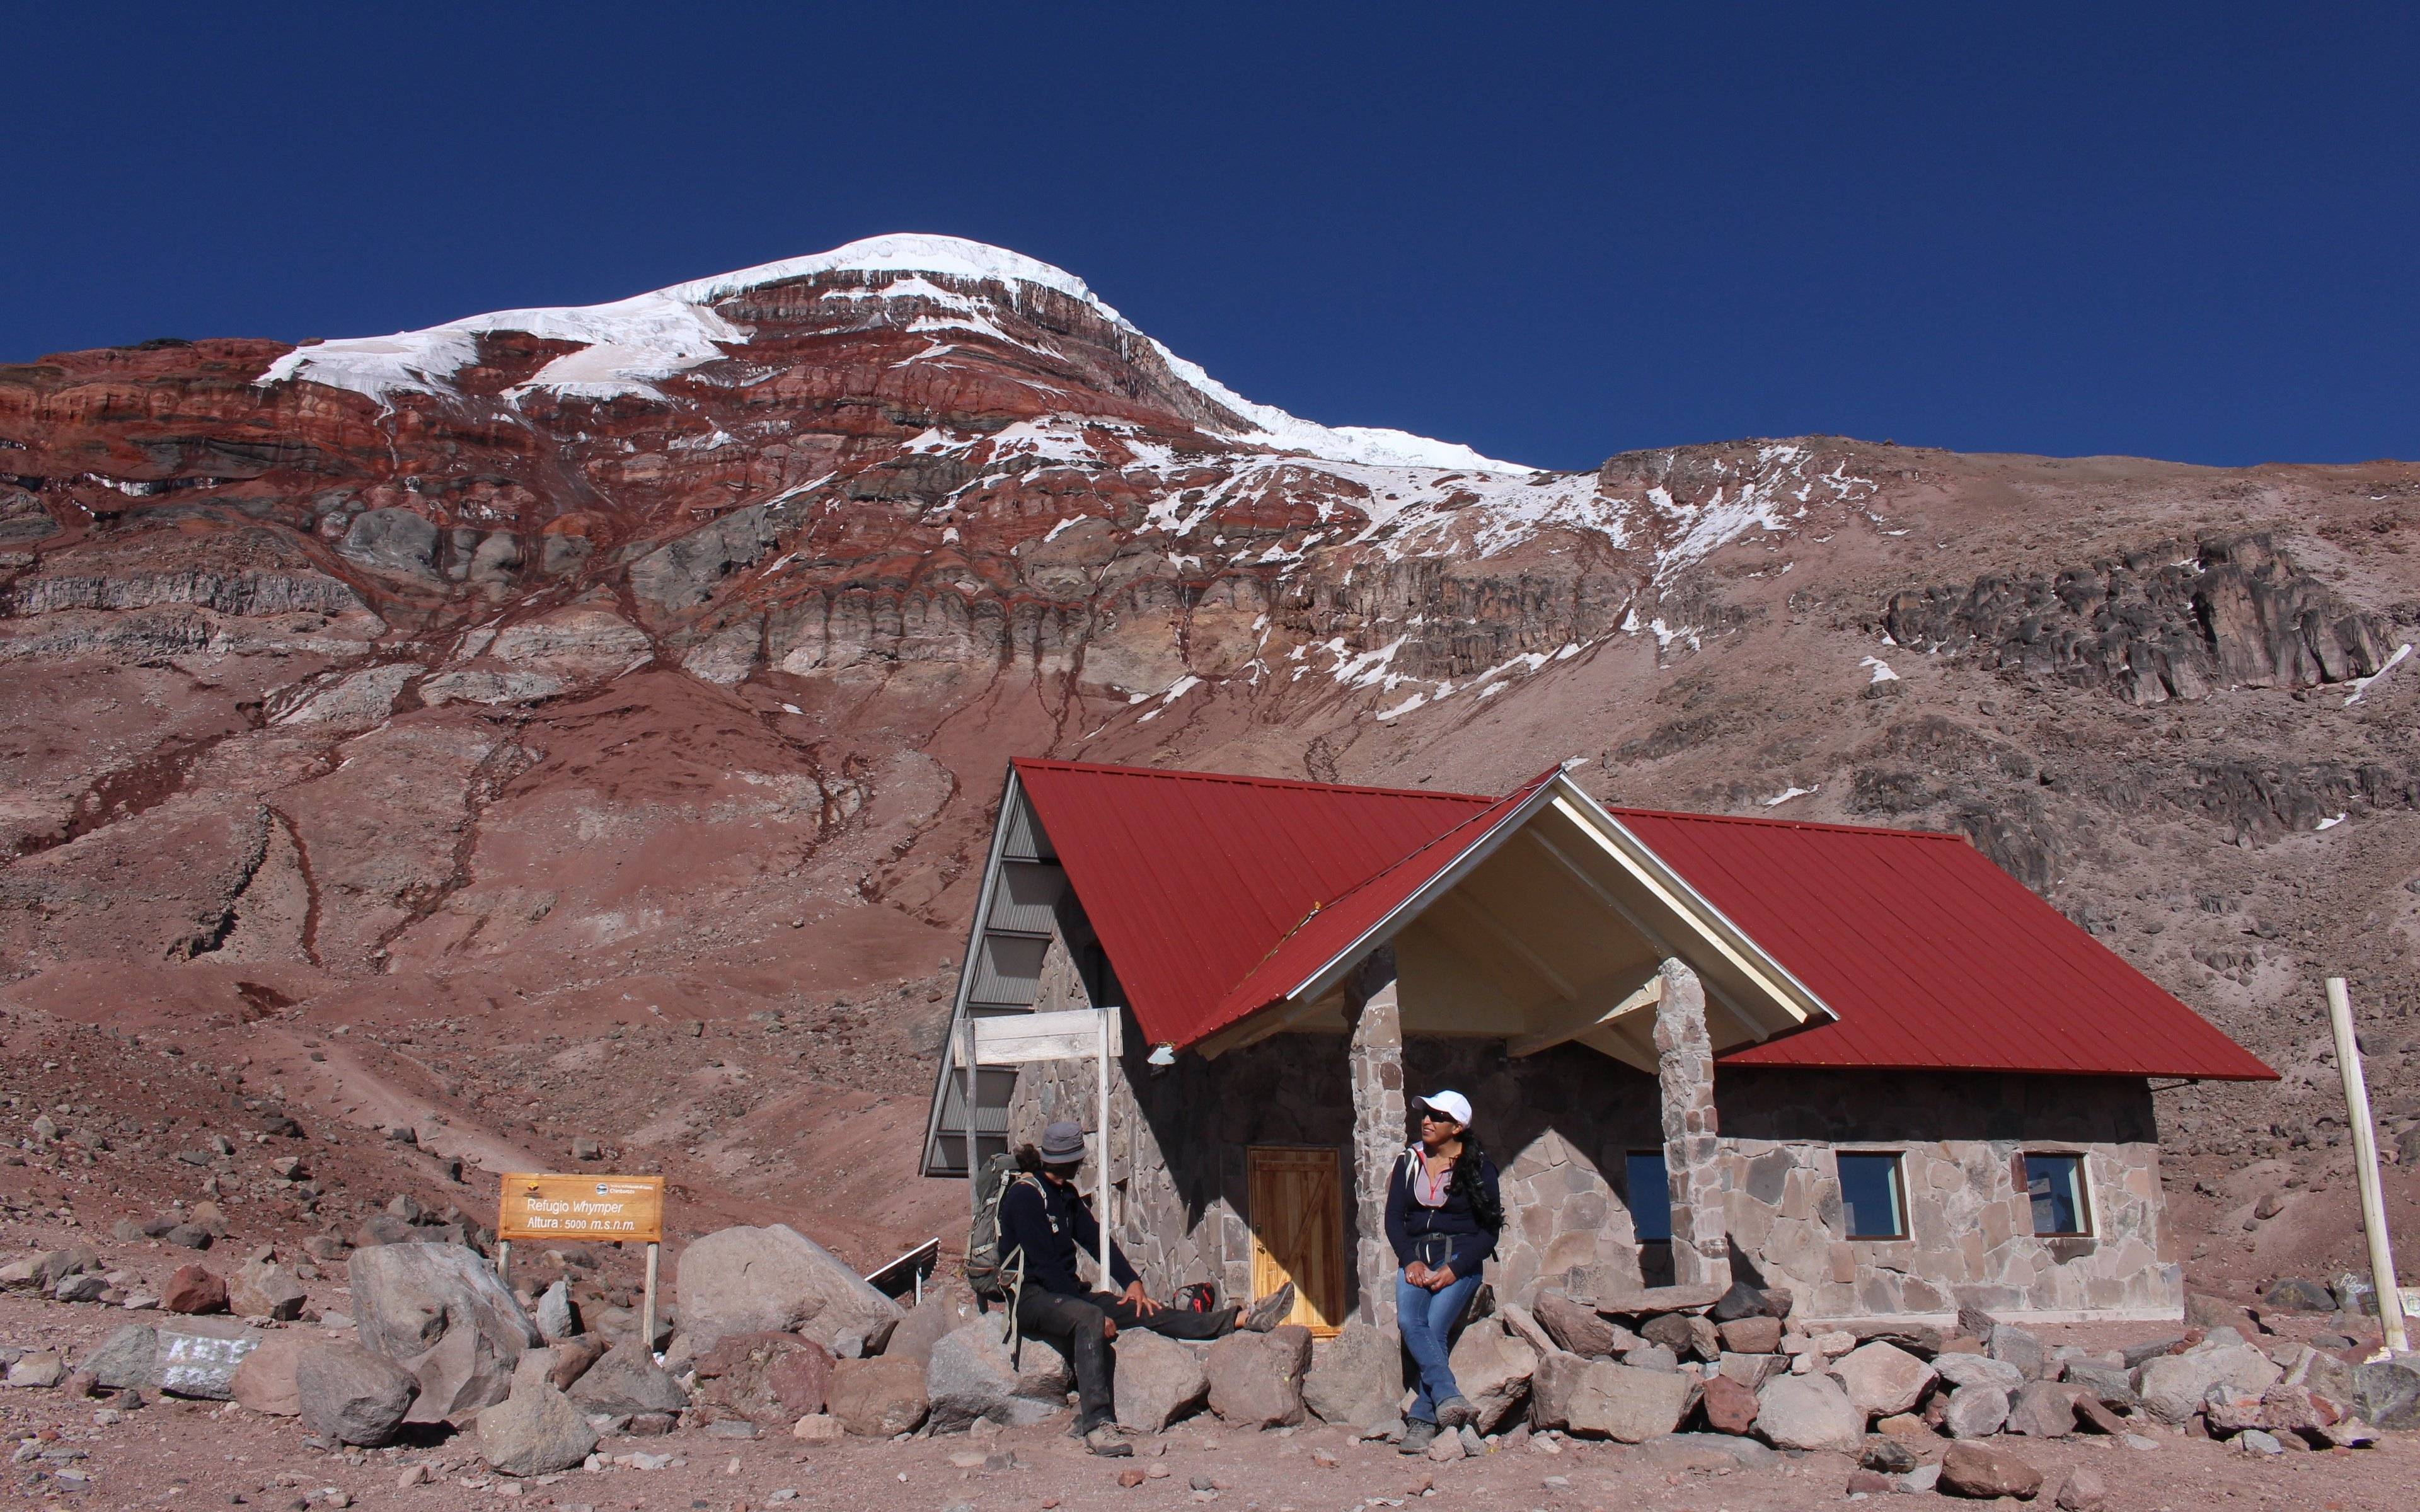 Höchster Punkt der Reise: 5.000 m am Chimborazo und rasante Bikeabfahrt